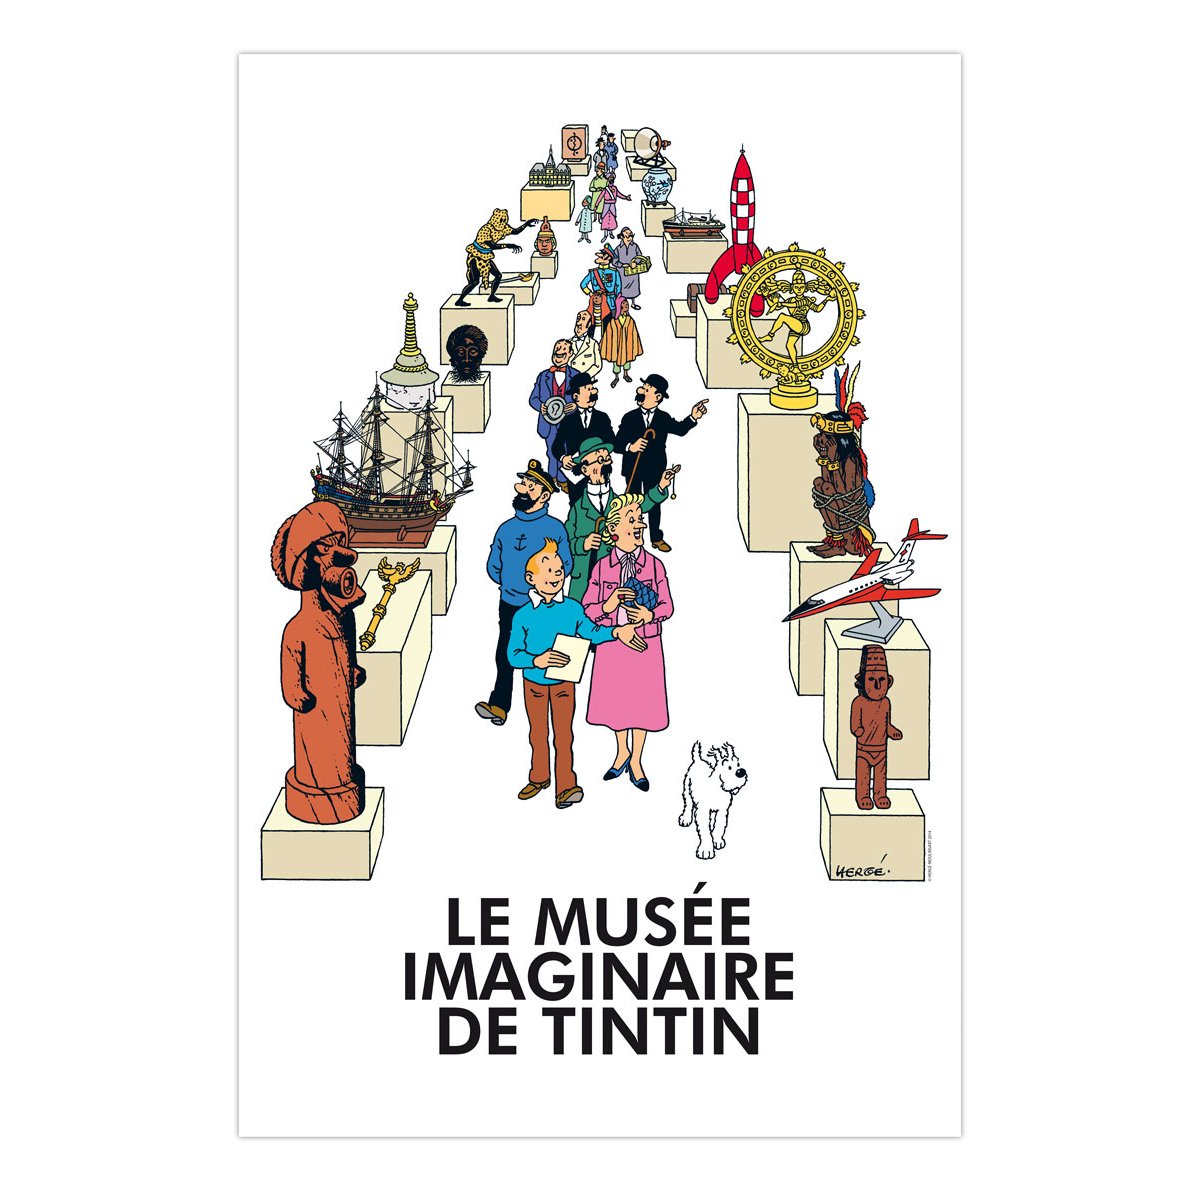 Le musée imaginaire de Tintin poster